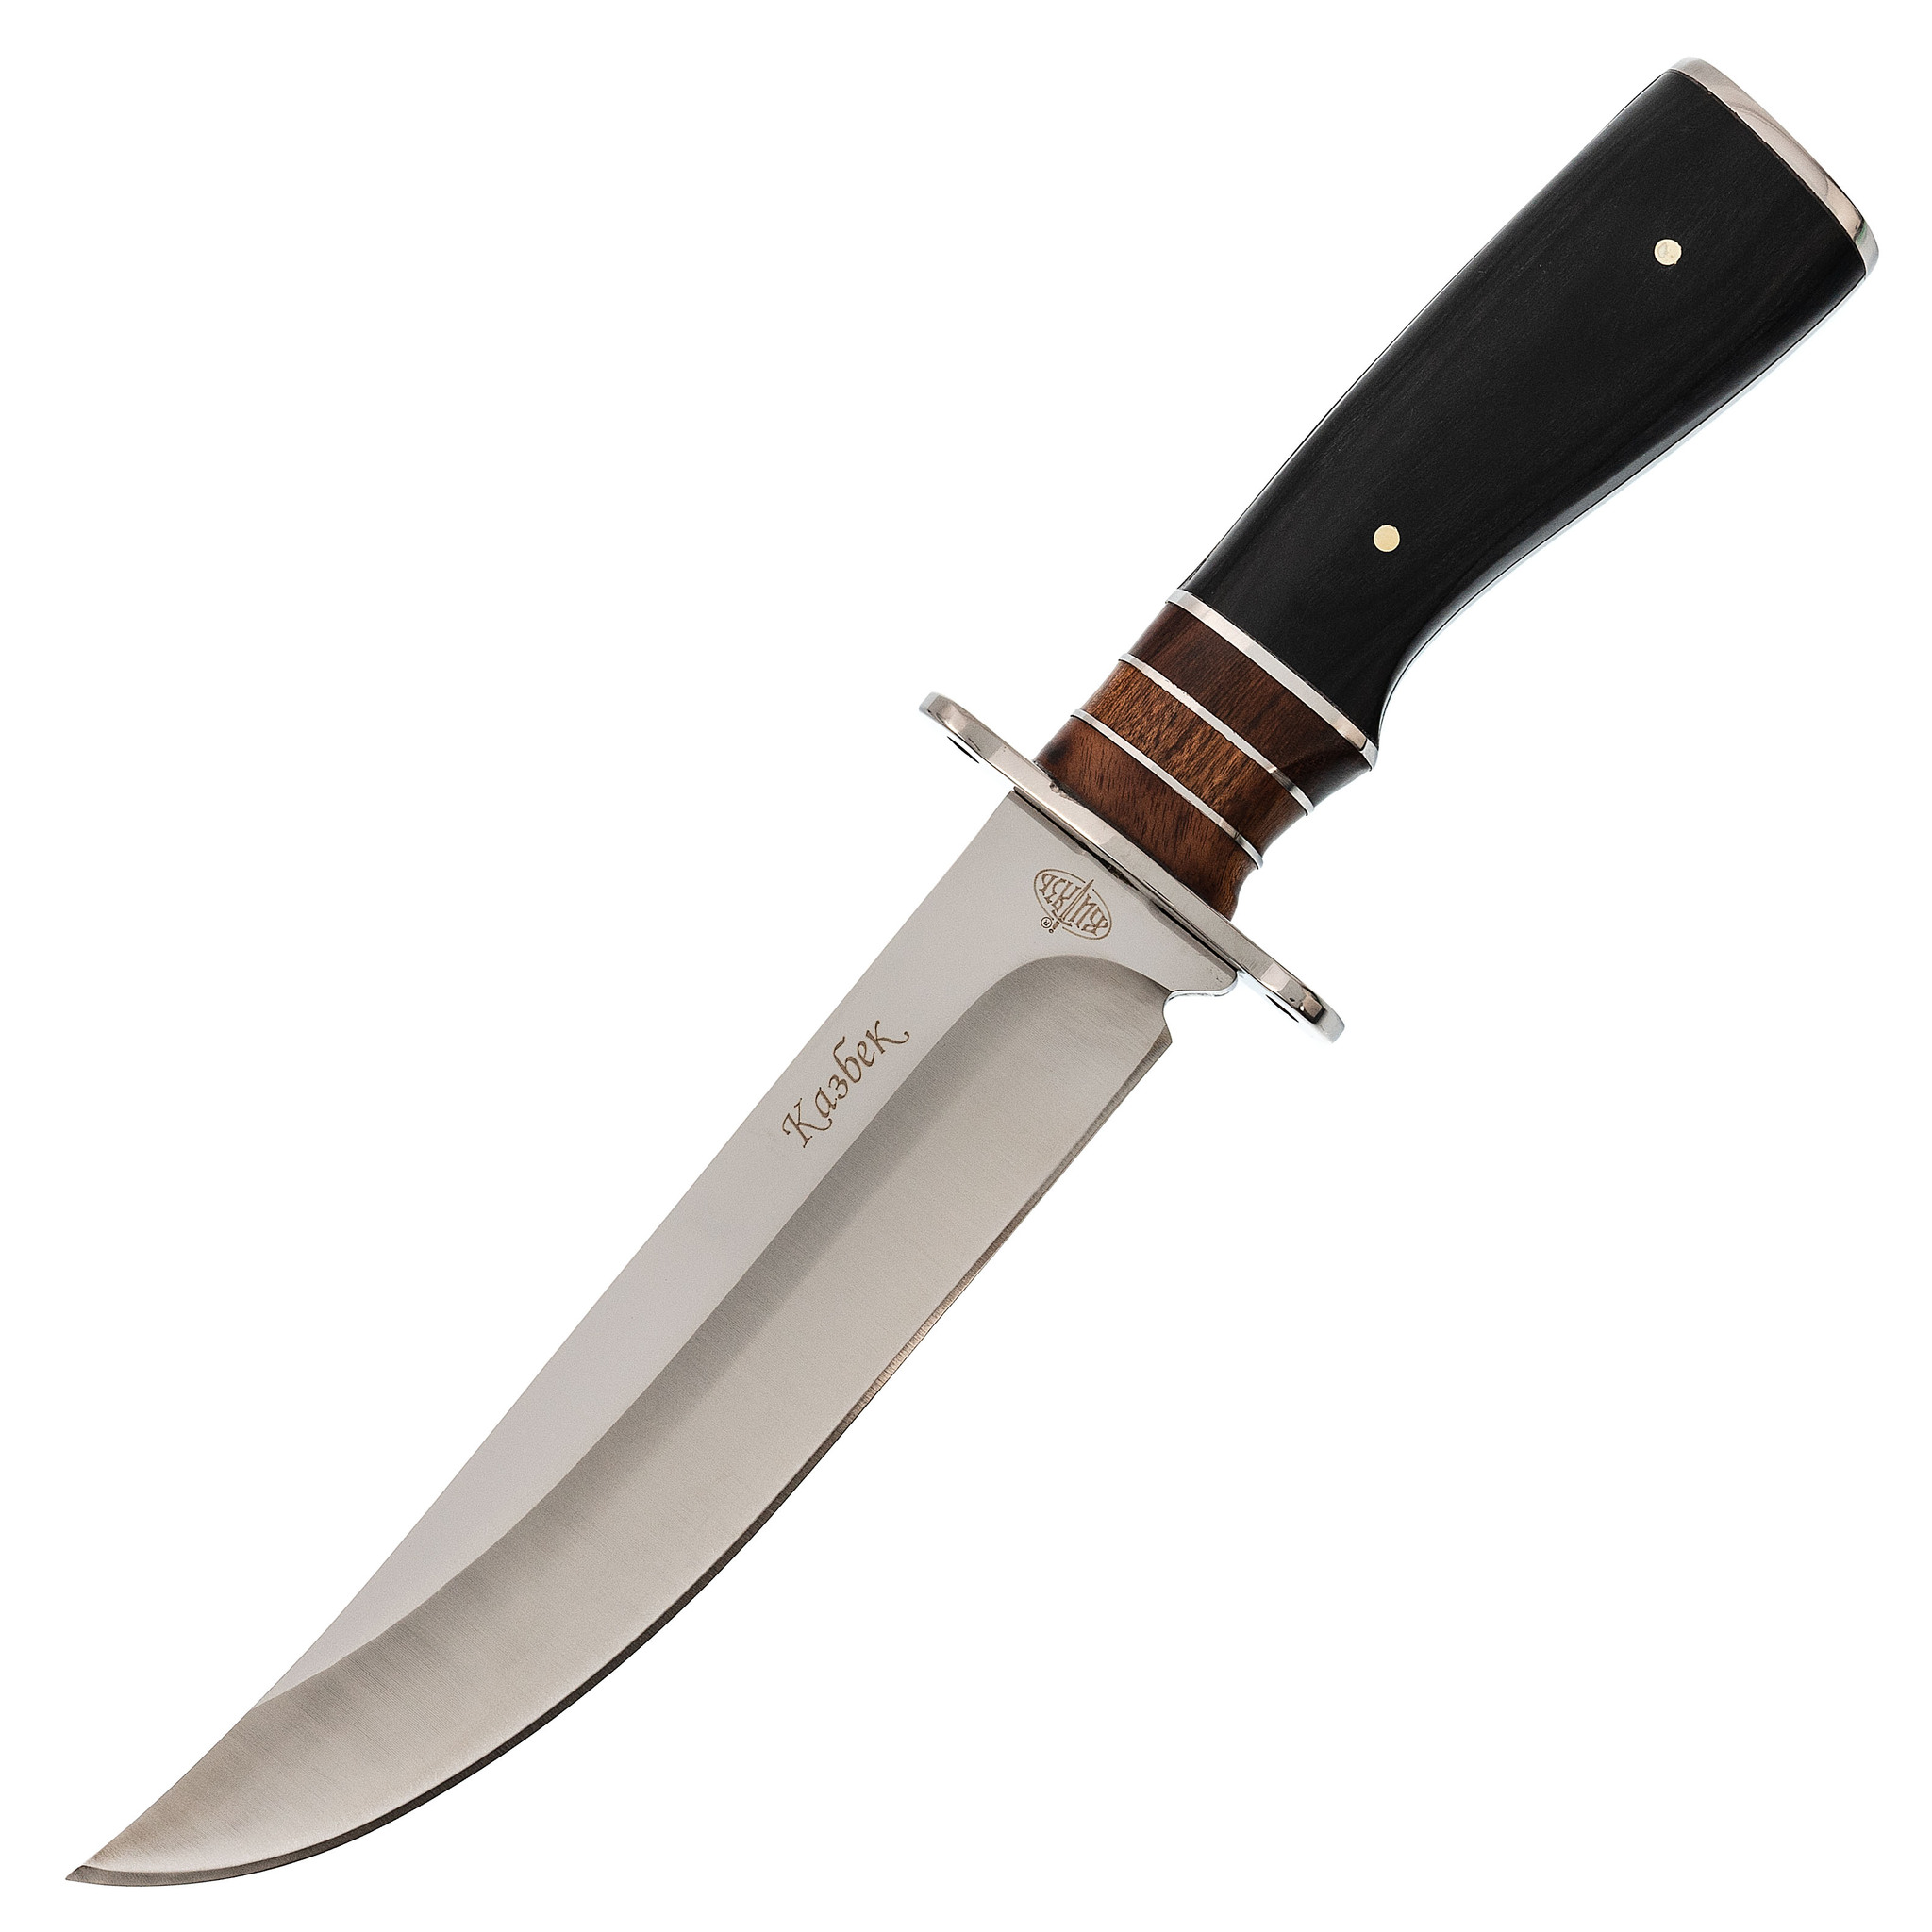  нож Казбек, B311-34 по цене 2470.0 руб. -  , СПБ